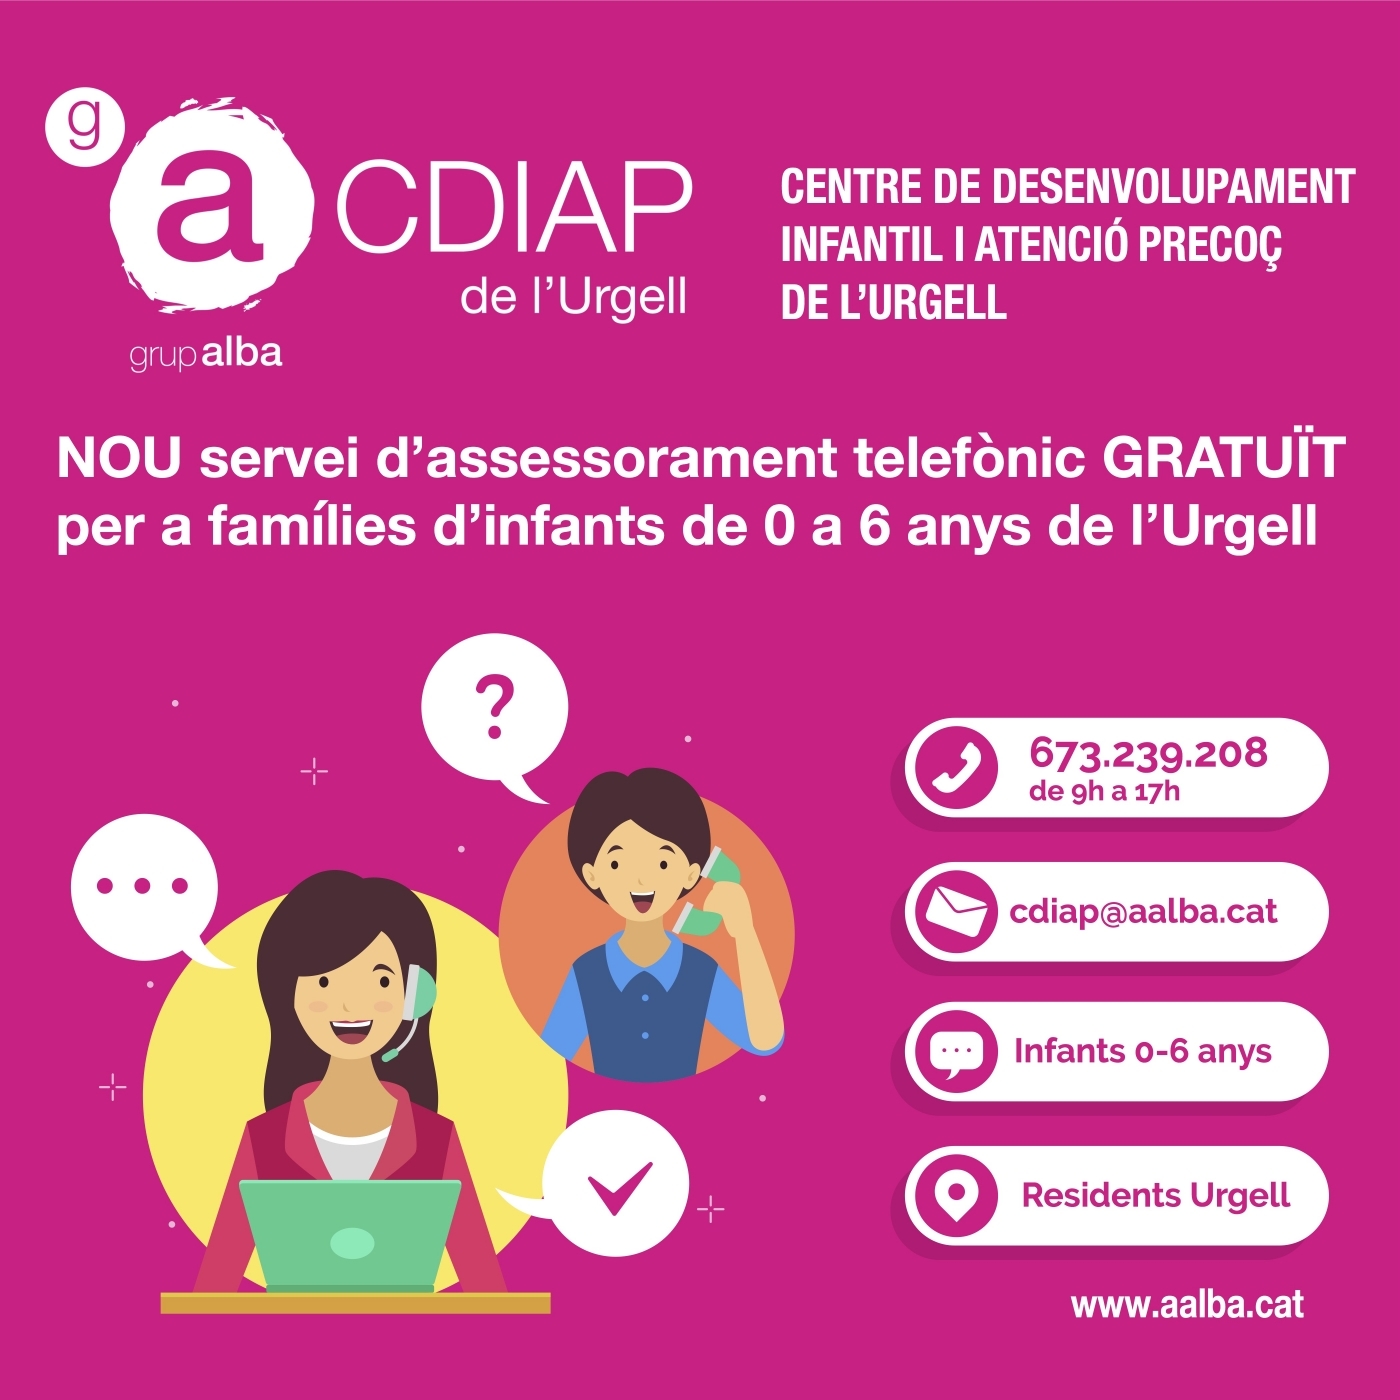 El CDIAP del del Grup Alba ofereix suport telefònic gratuït a les famílies amb infants de 0 a 6 anys de l'Urgell.